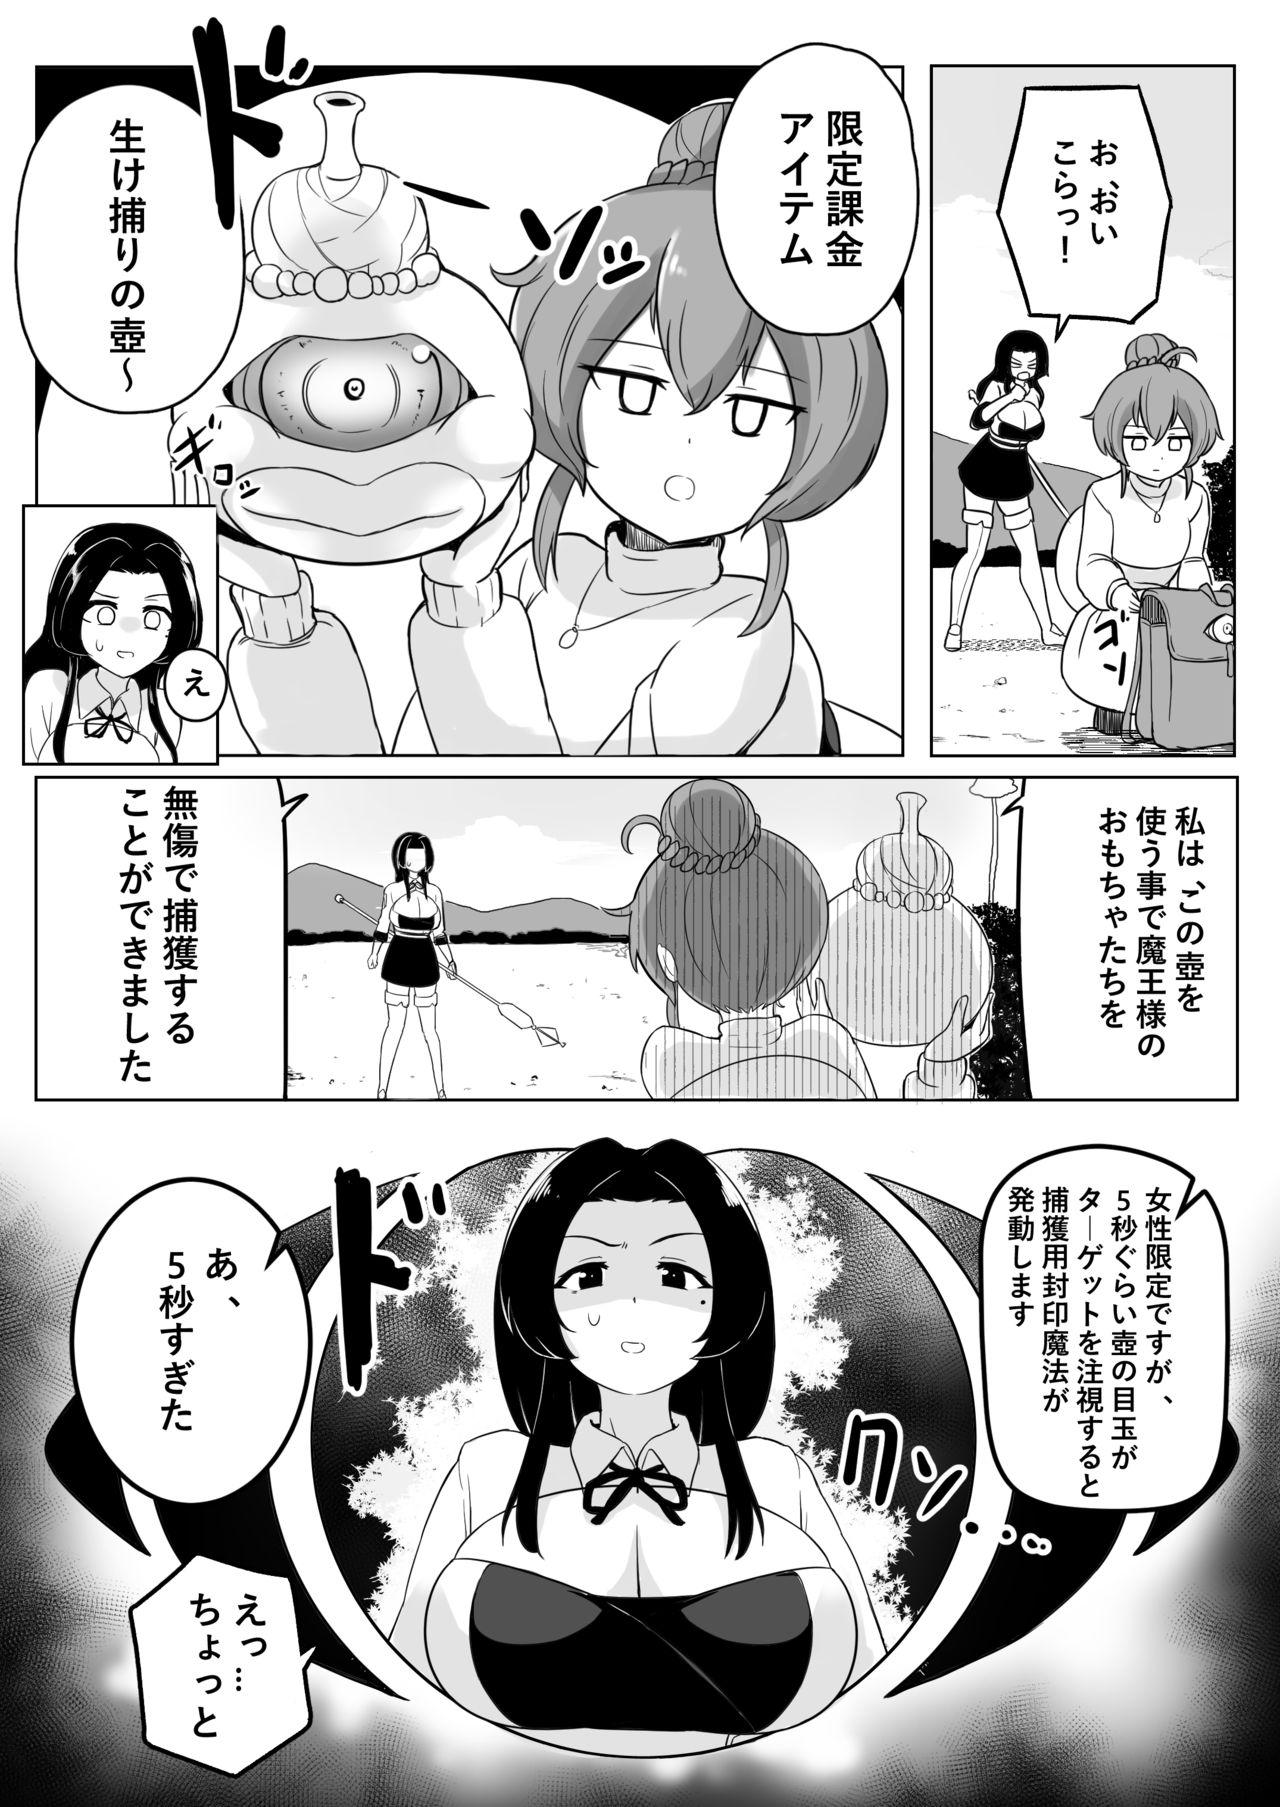 Ikedori Series 4 Page Manga 1